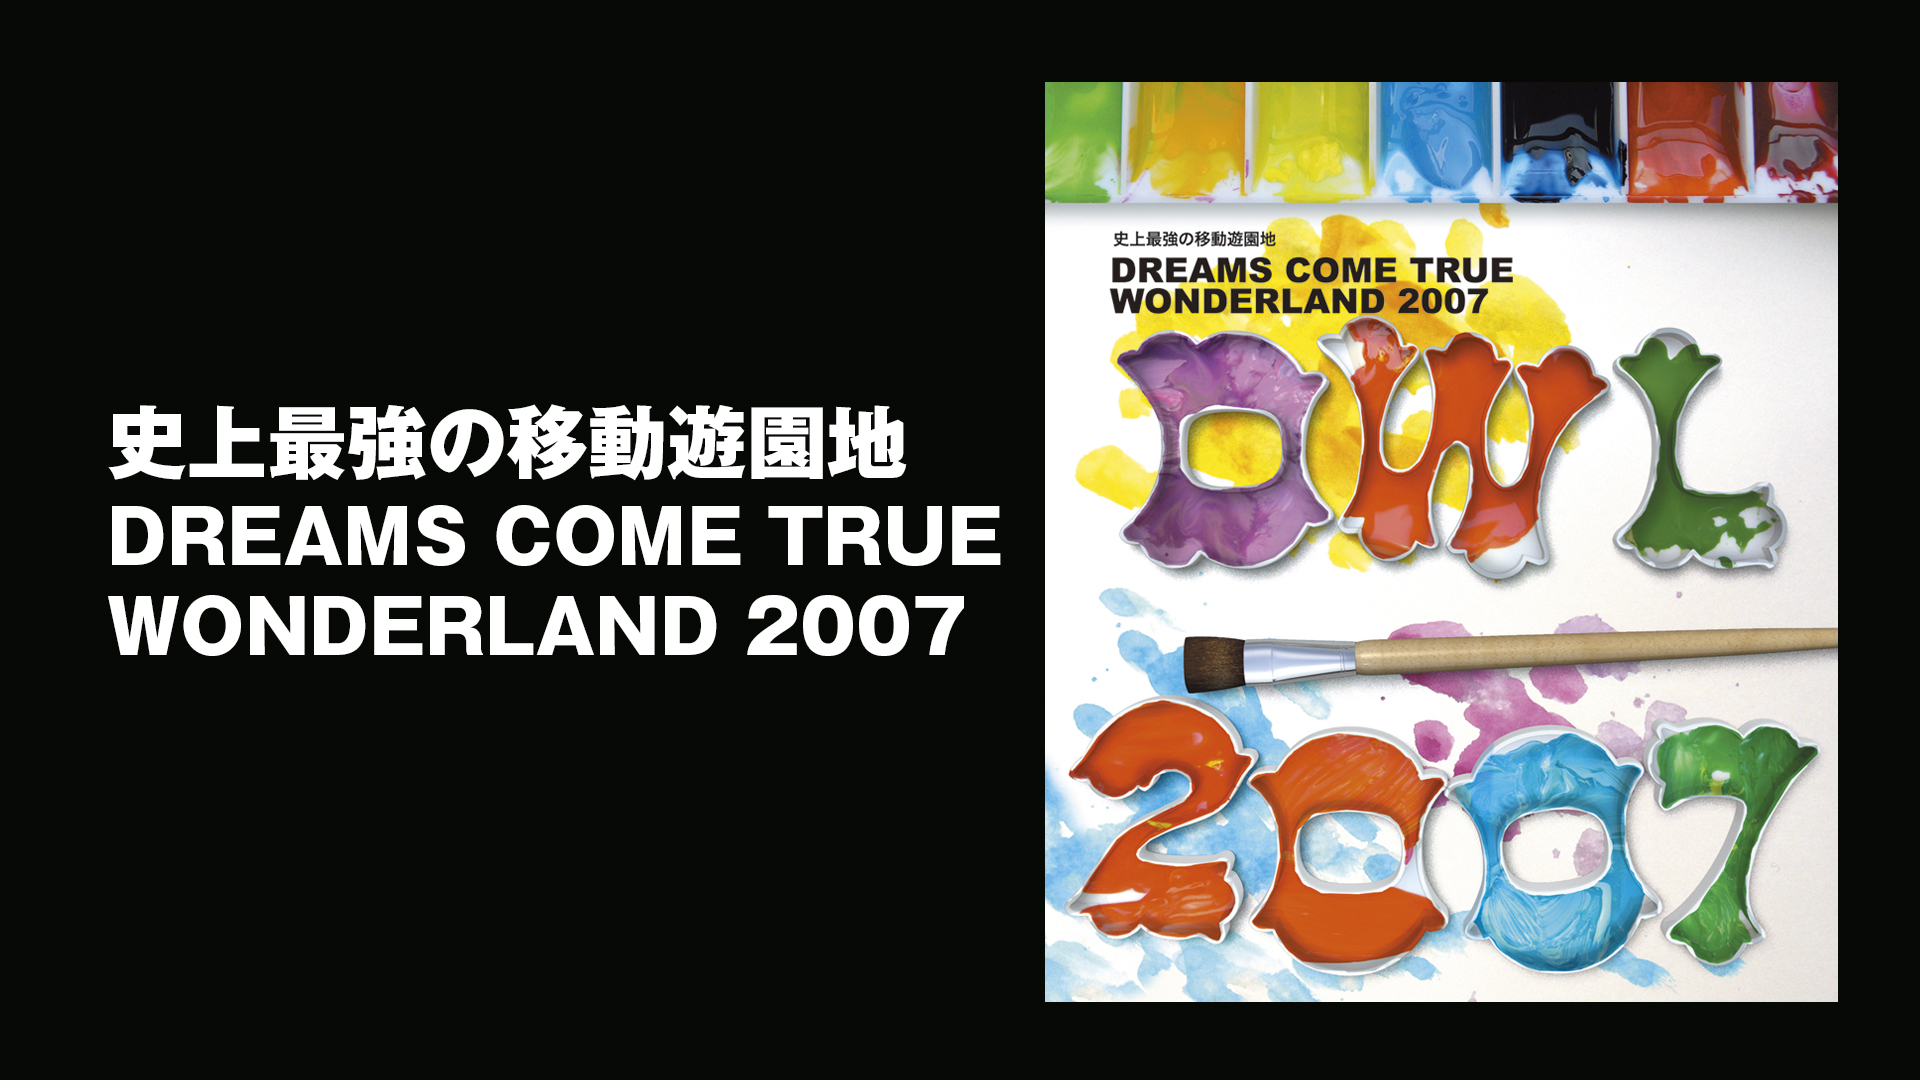 史上最強の移動遊園地 DREAMS COME TRUE WONDERLAND 2007(音楽・アイドル / 2007) - 動画配信 | U-NEXT  31日間無料トライアル